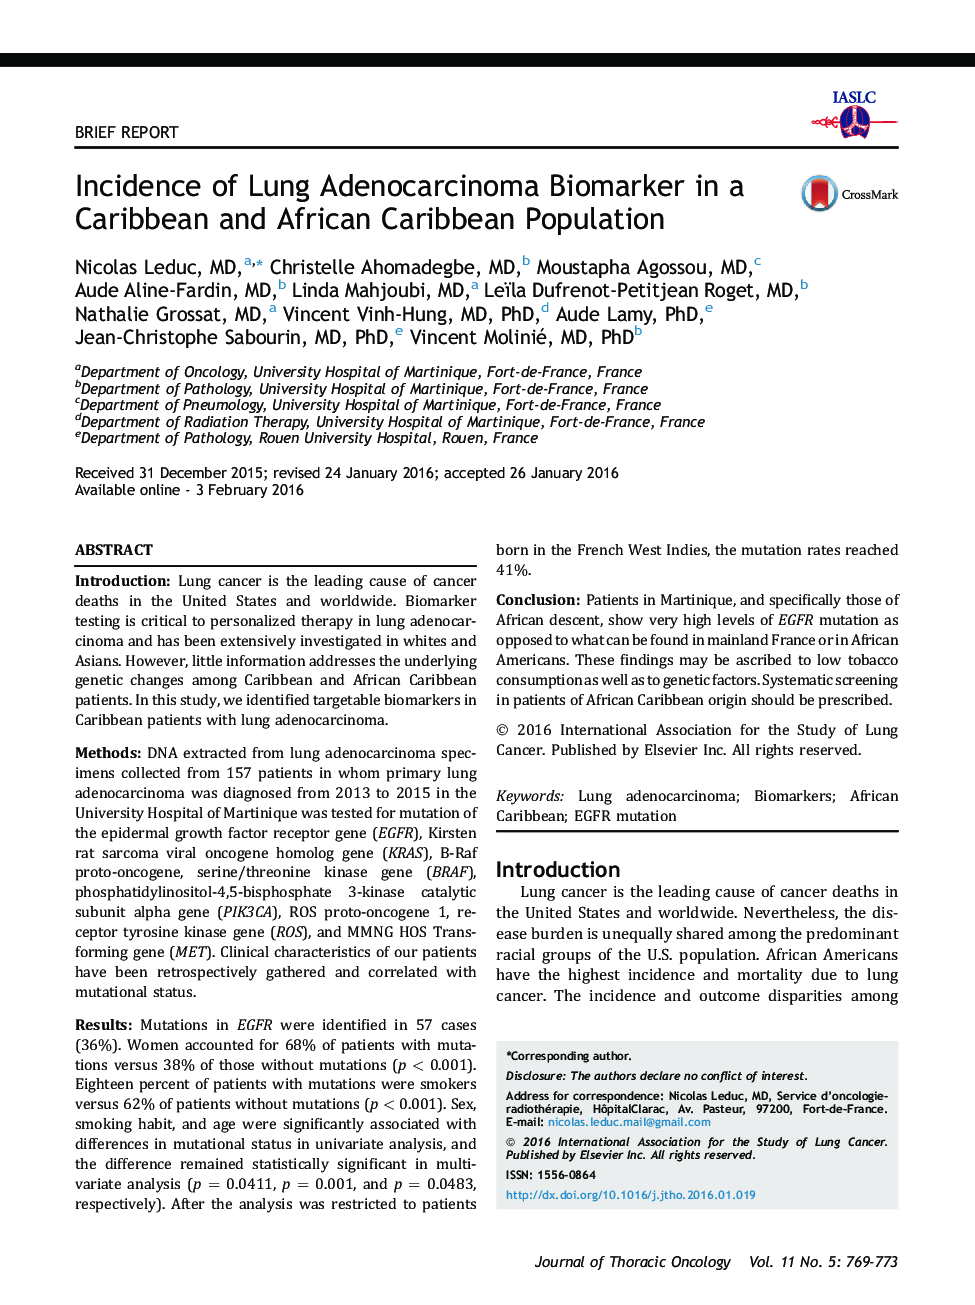 بروز بیومارکرهای آدنوکارسینوم ریه در جمعیت کارائیب و کارائیب آفریقایی 